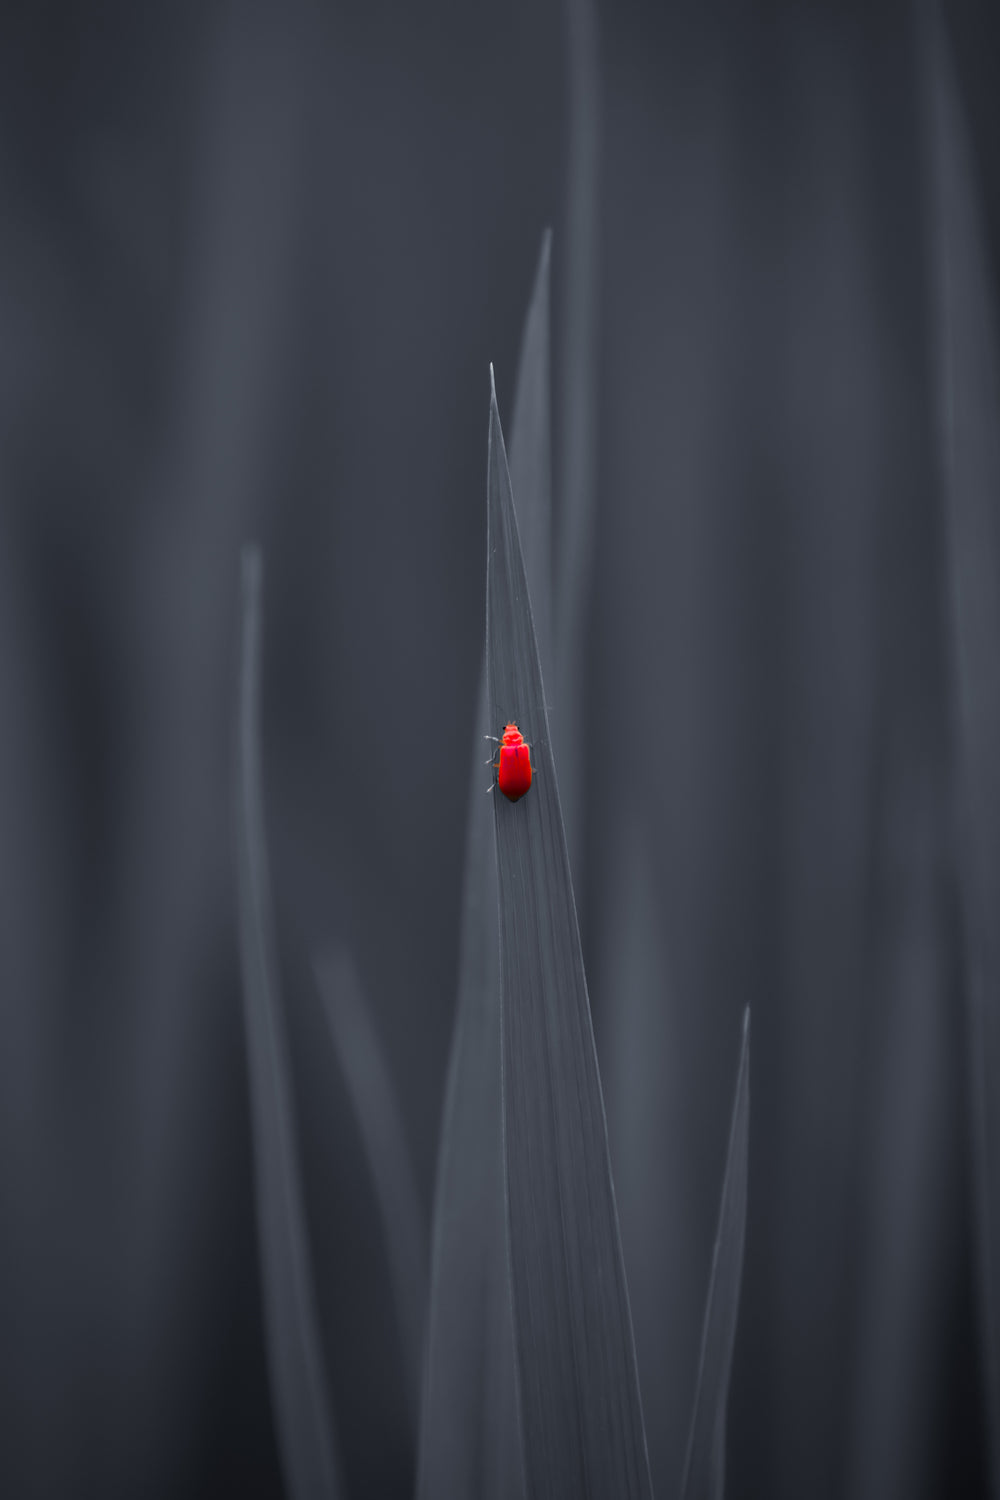 small red bug walks up a grey leaf